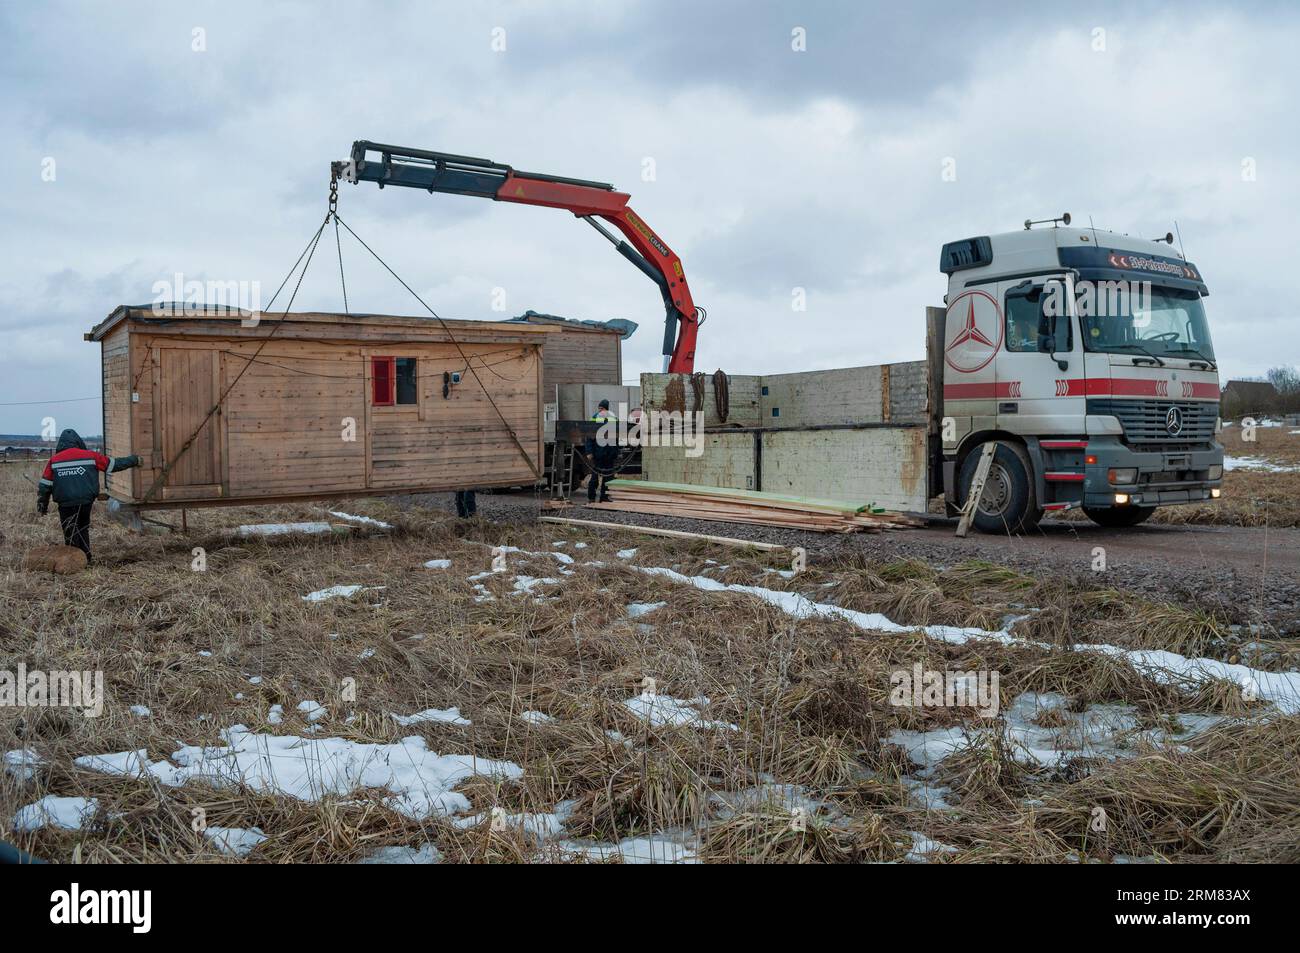 REGIONE DI LENINGRADO, RUSSIA - 4 MARZO 2021: Scarico con una gru manipolatrice di un capannone di costruzione in un sito rurale per la disposizione di un edificio Foto Stock